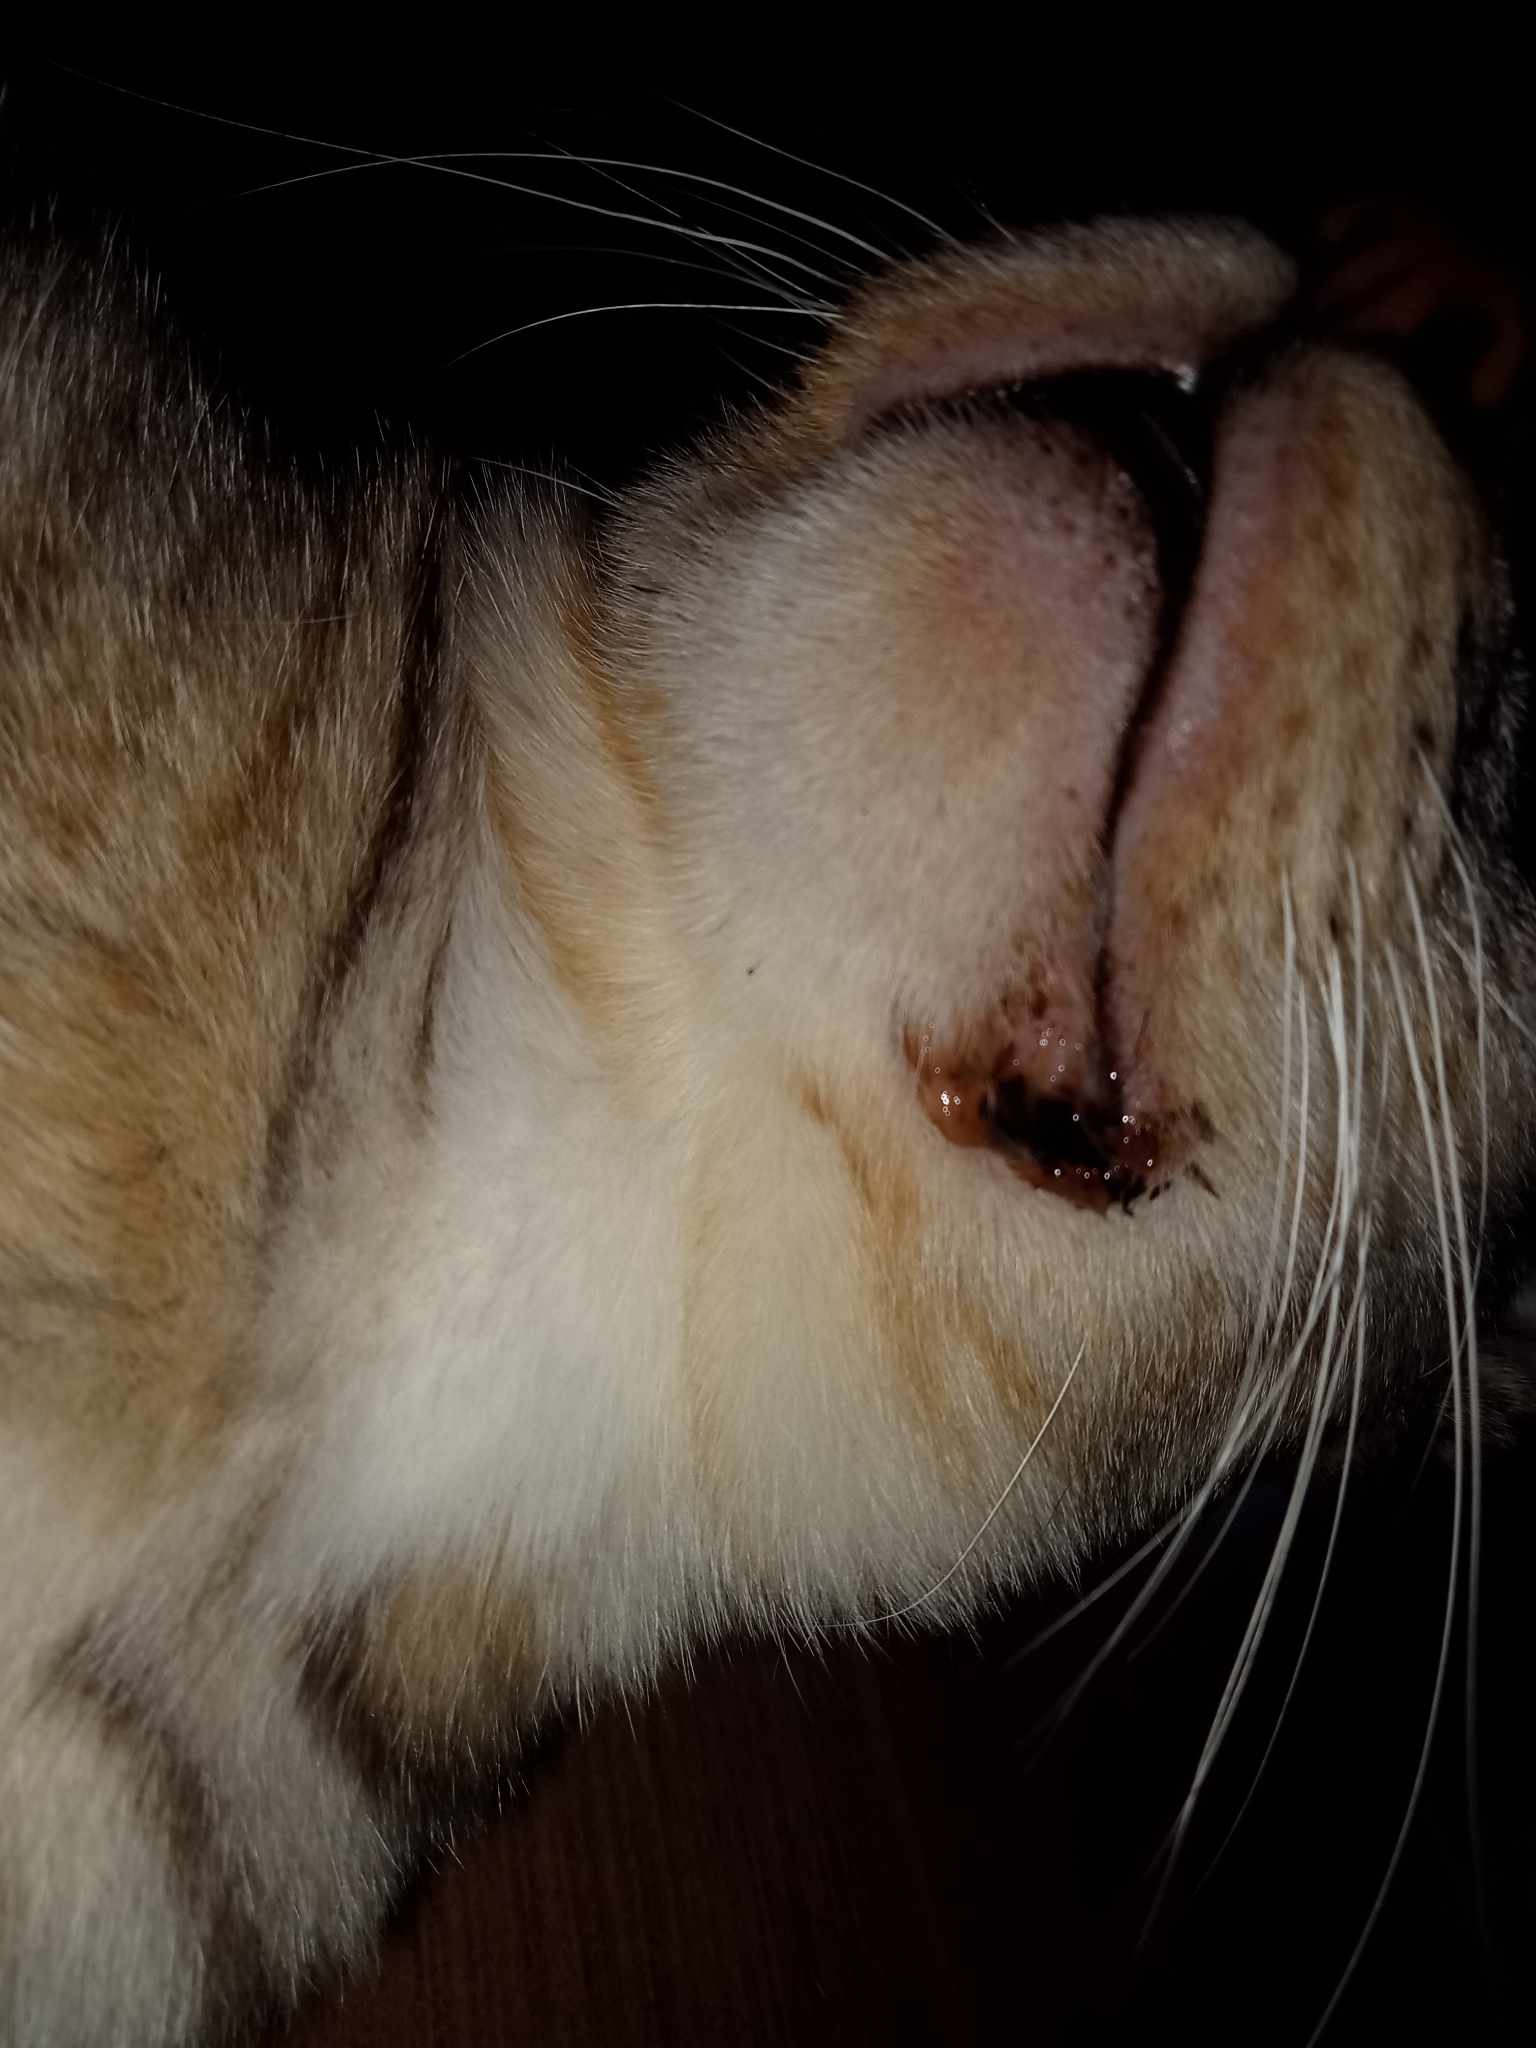 อยากทราบอาการน้องแมว ที่เป็นแผลขอบปาก มีกลิ่นปากเหม็น น้ำลายรอบปากก็เหม็นด่วยค่ะ  เรื่องการกินน้องไม่กินอาหารเม็ดเลยค่ะ - Pantip